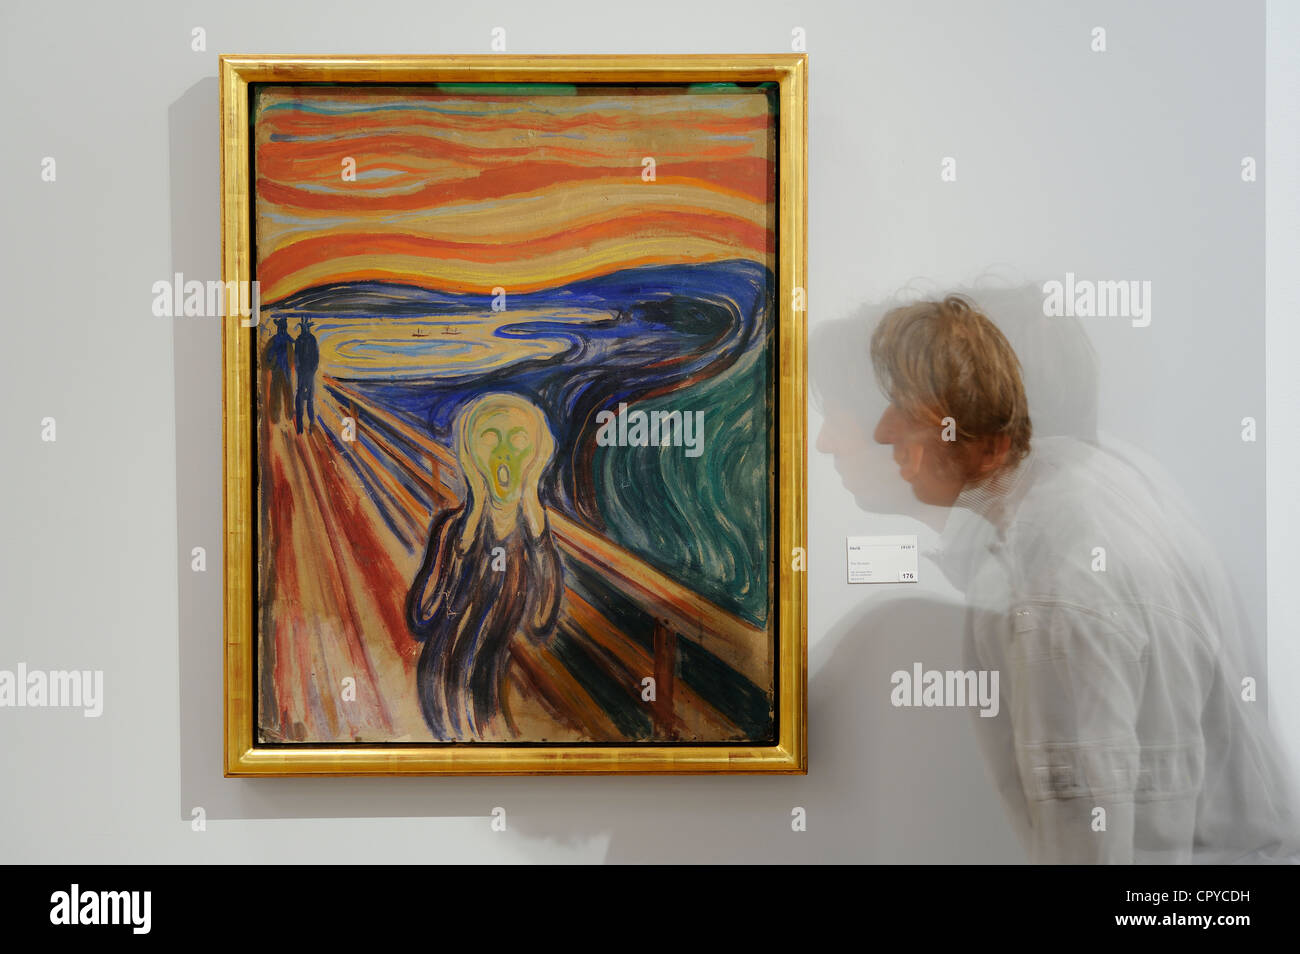 La Norvège, Oslo, musée Edvard Munch, le cri, la peinture expressionniste, la plus célèbre photo de Munch Banque D'Images